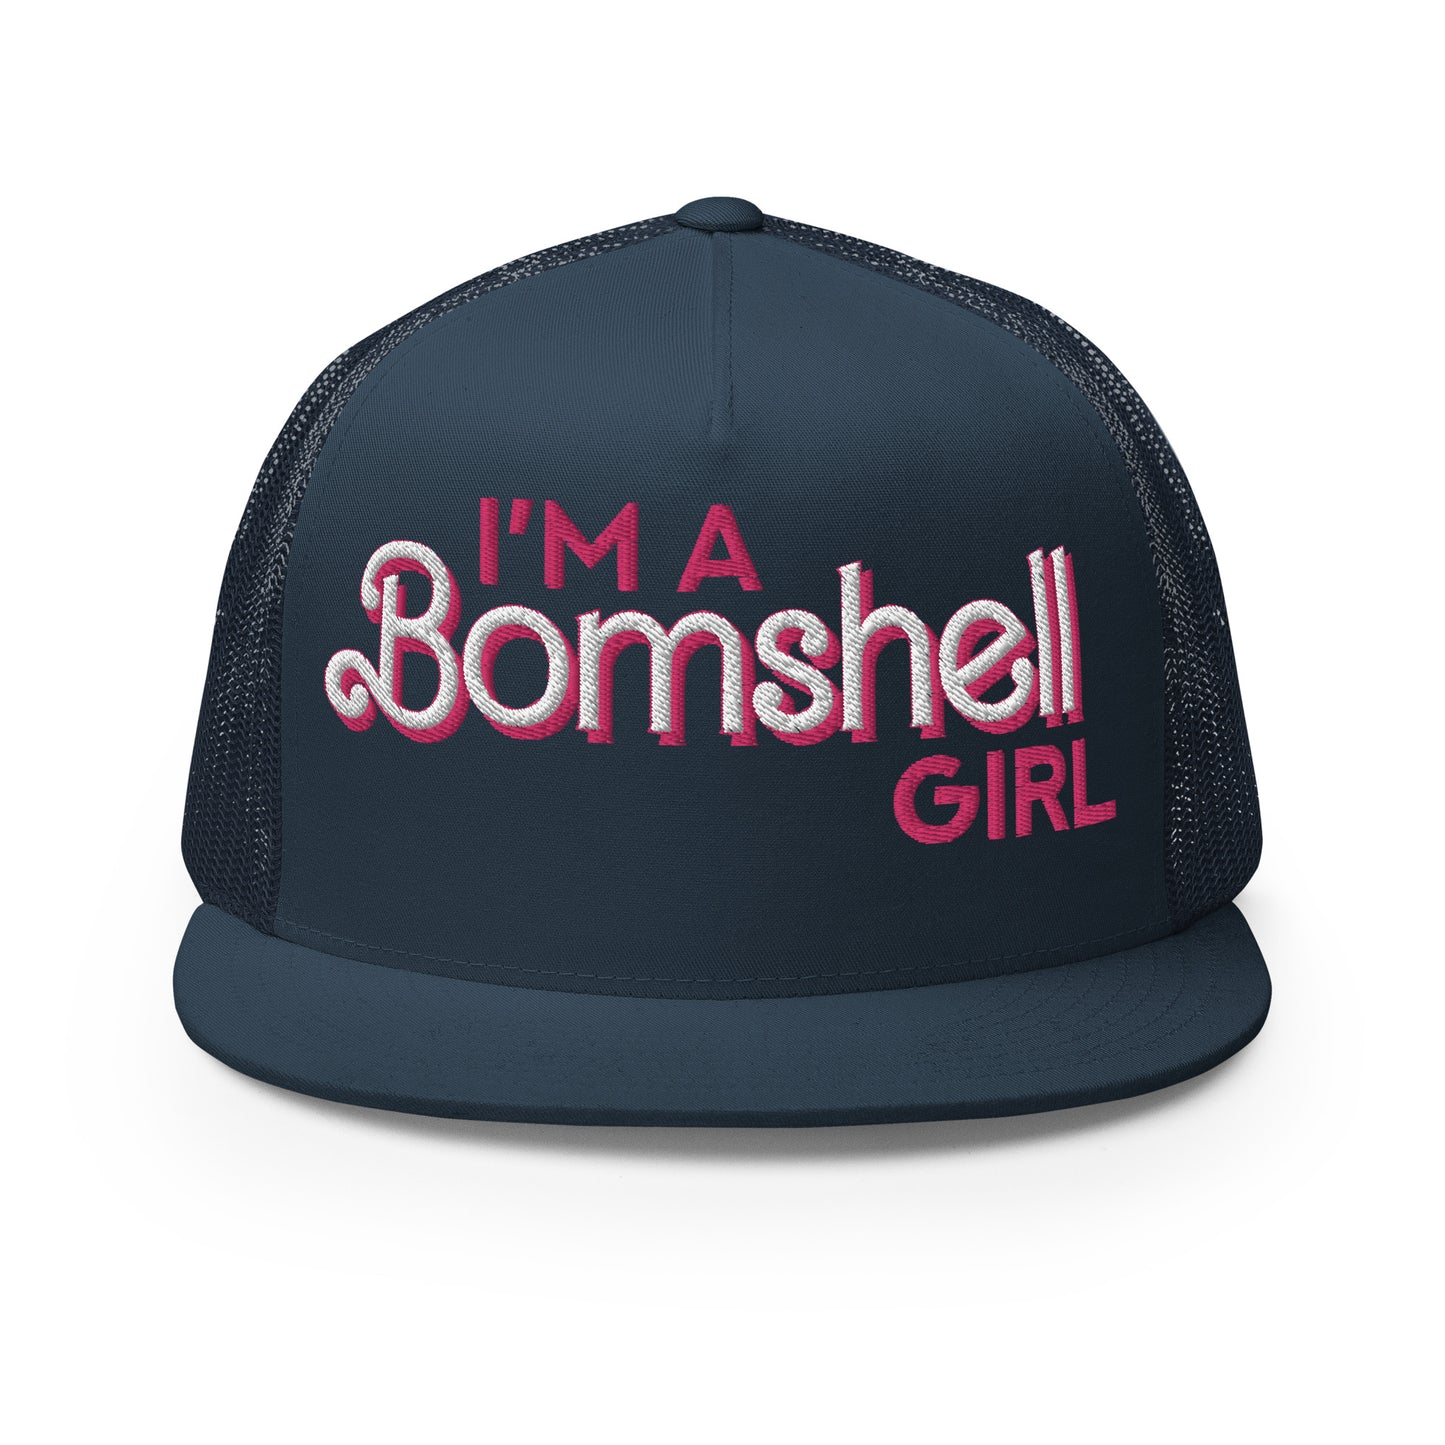 Bomshell Girl Trucker Cap